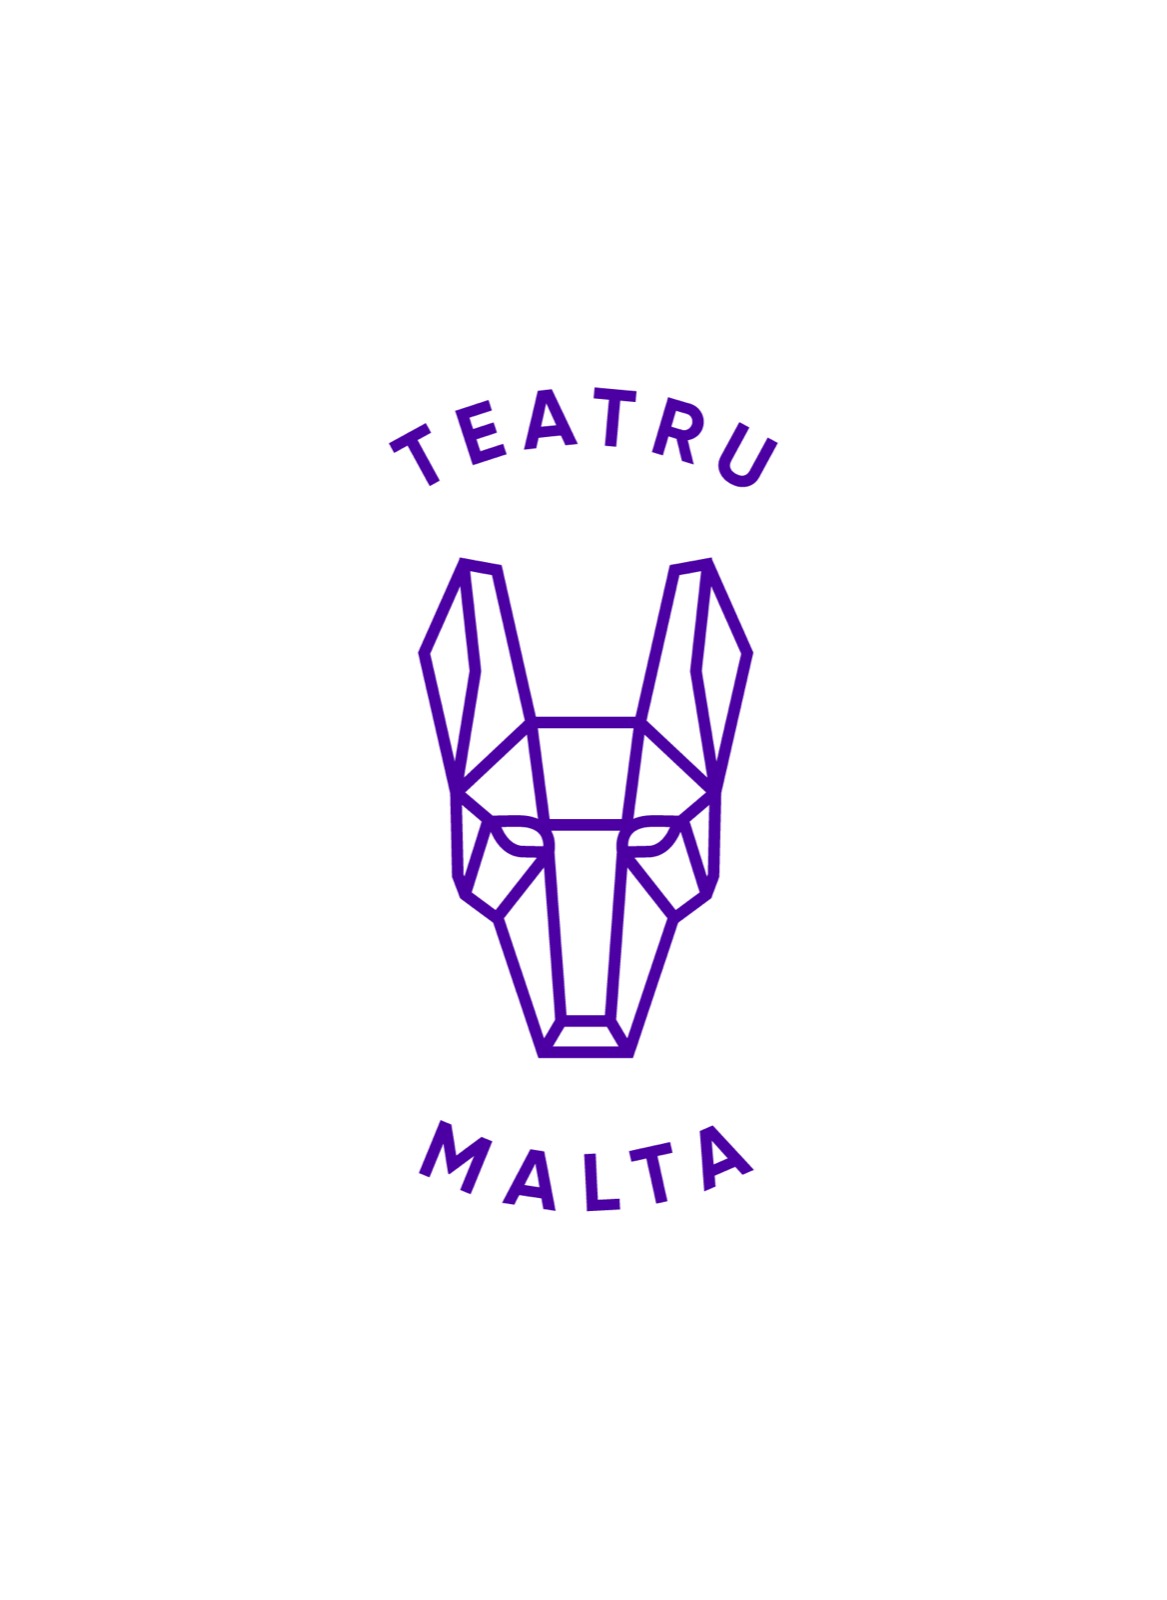 Teatru Malta c/o Arts Council Malta